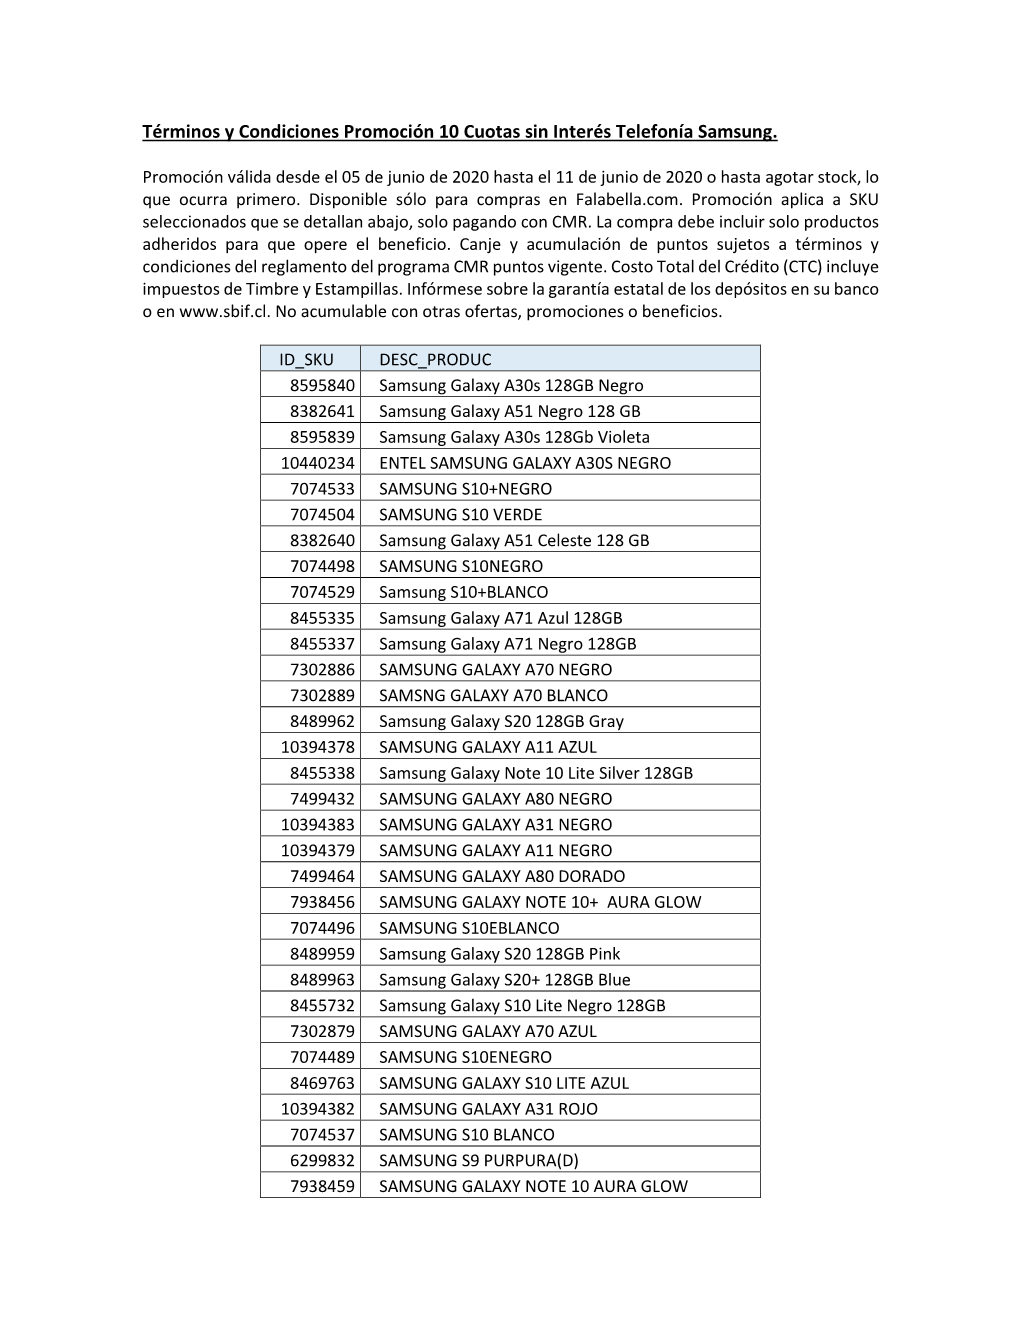 Términos Y Condiciones Promoción 10 Cuotas Sin Interés Telefonía Samsung